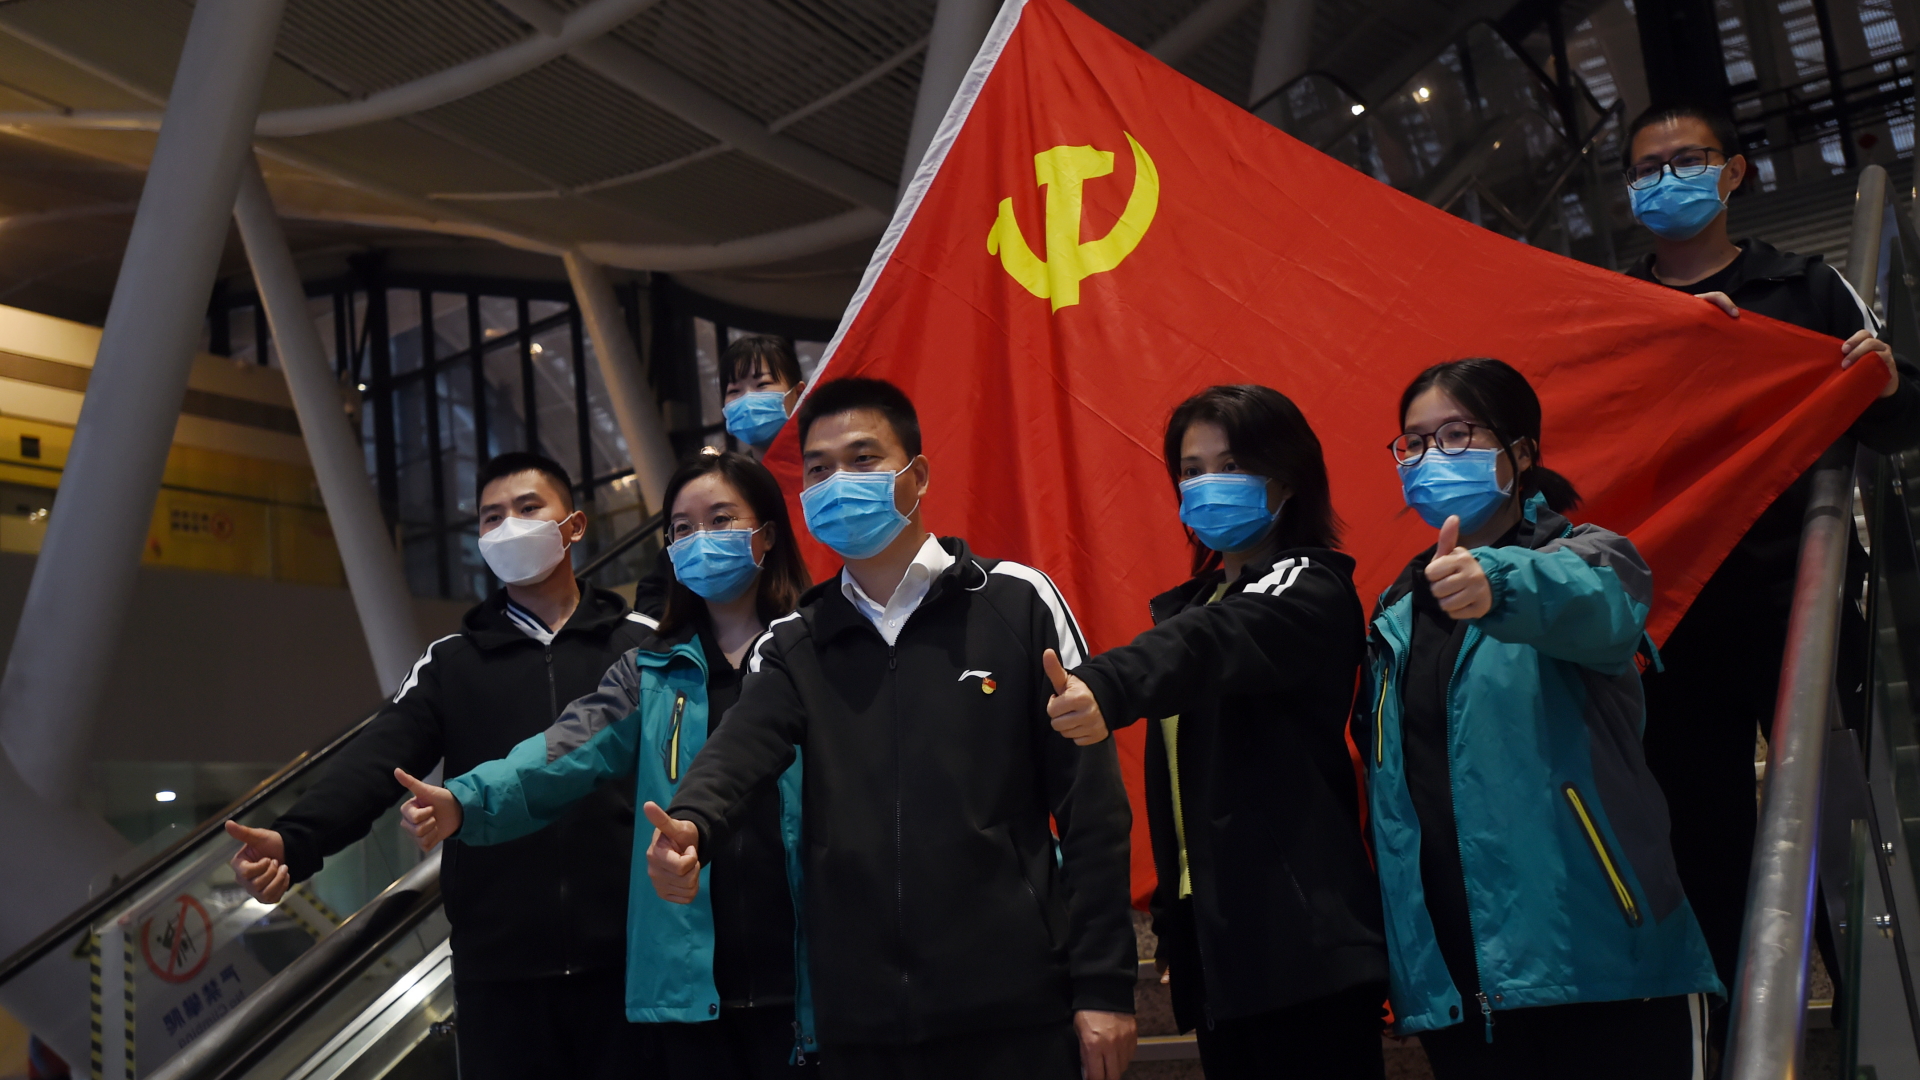 Demonstrativ vor einer Flagge der Kommunistischen Partei: Medizinisches Personal in Wuhan.